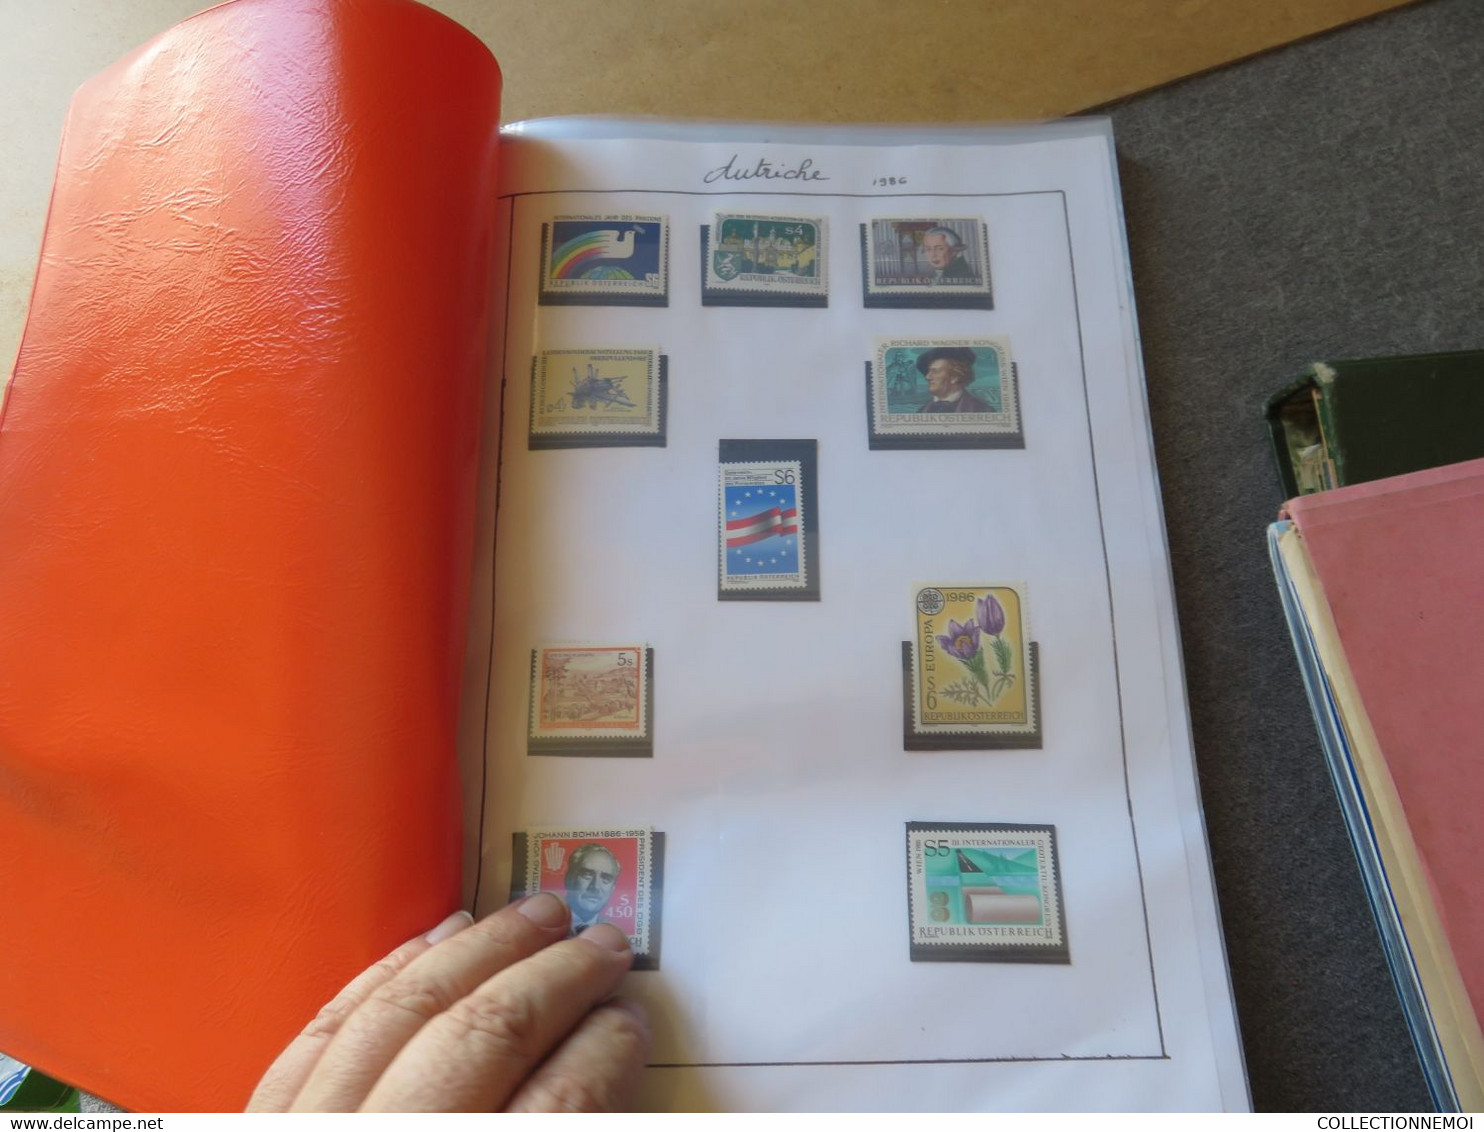 VRAC de timbres du monde ,, des jours de tri ,STRICTEMENT IMPOSSIBLE DE TOUT PHOTOGRAPHIER